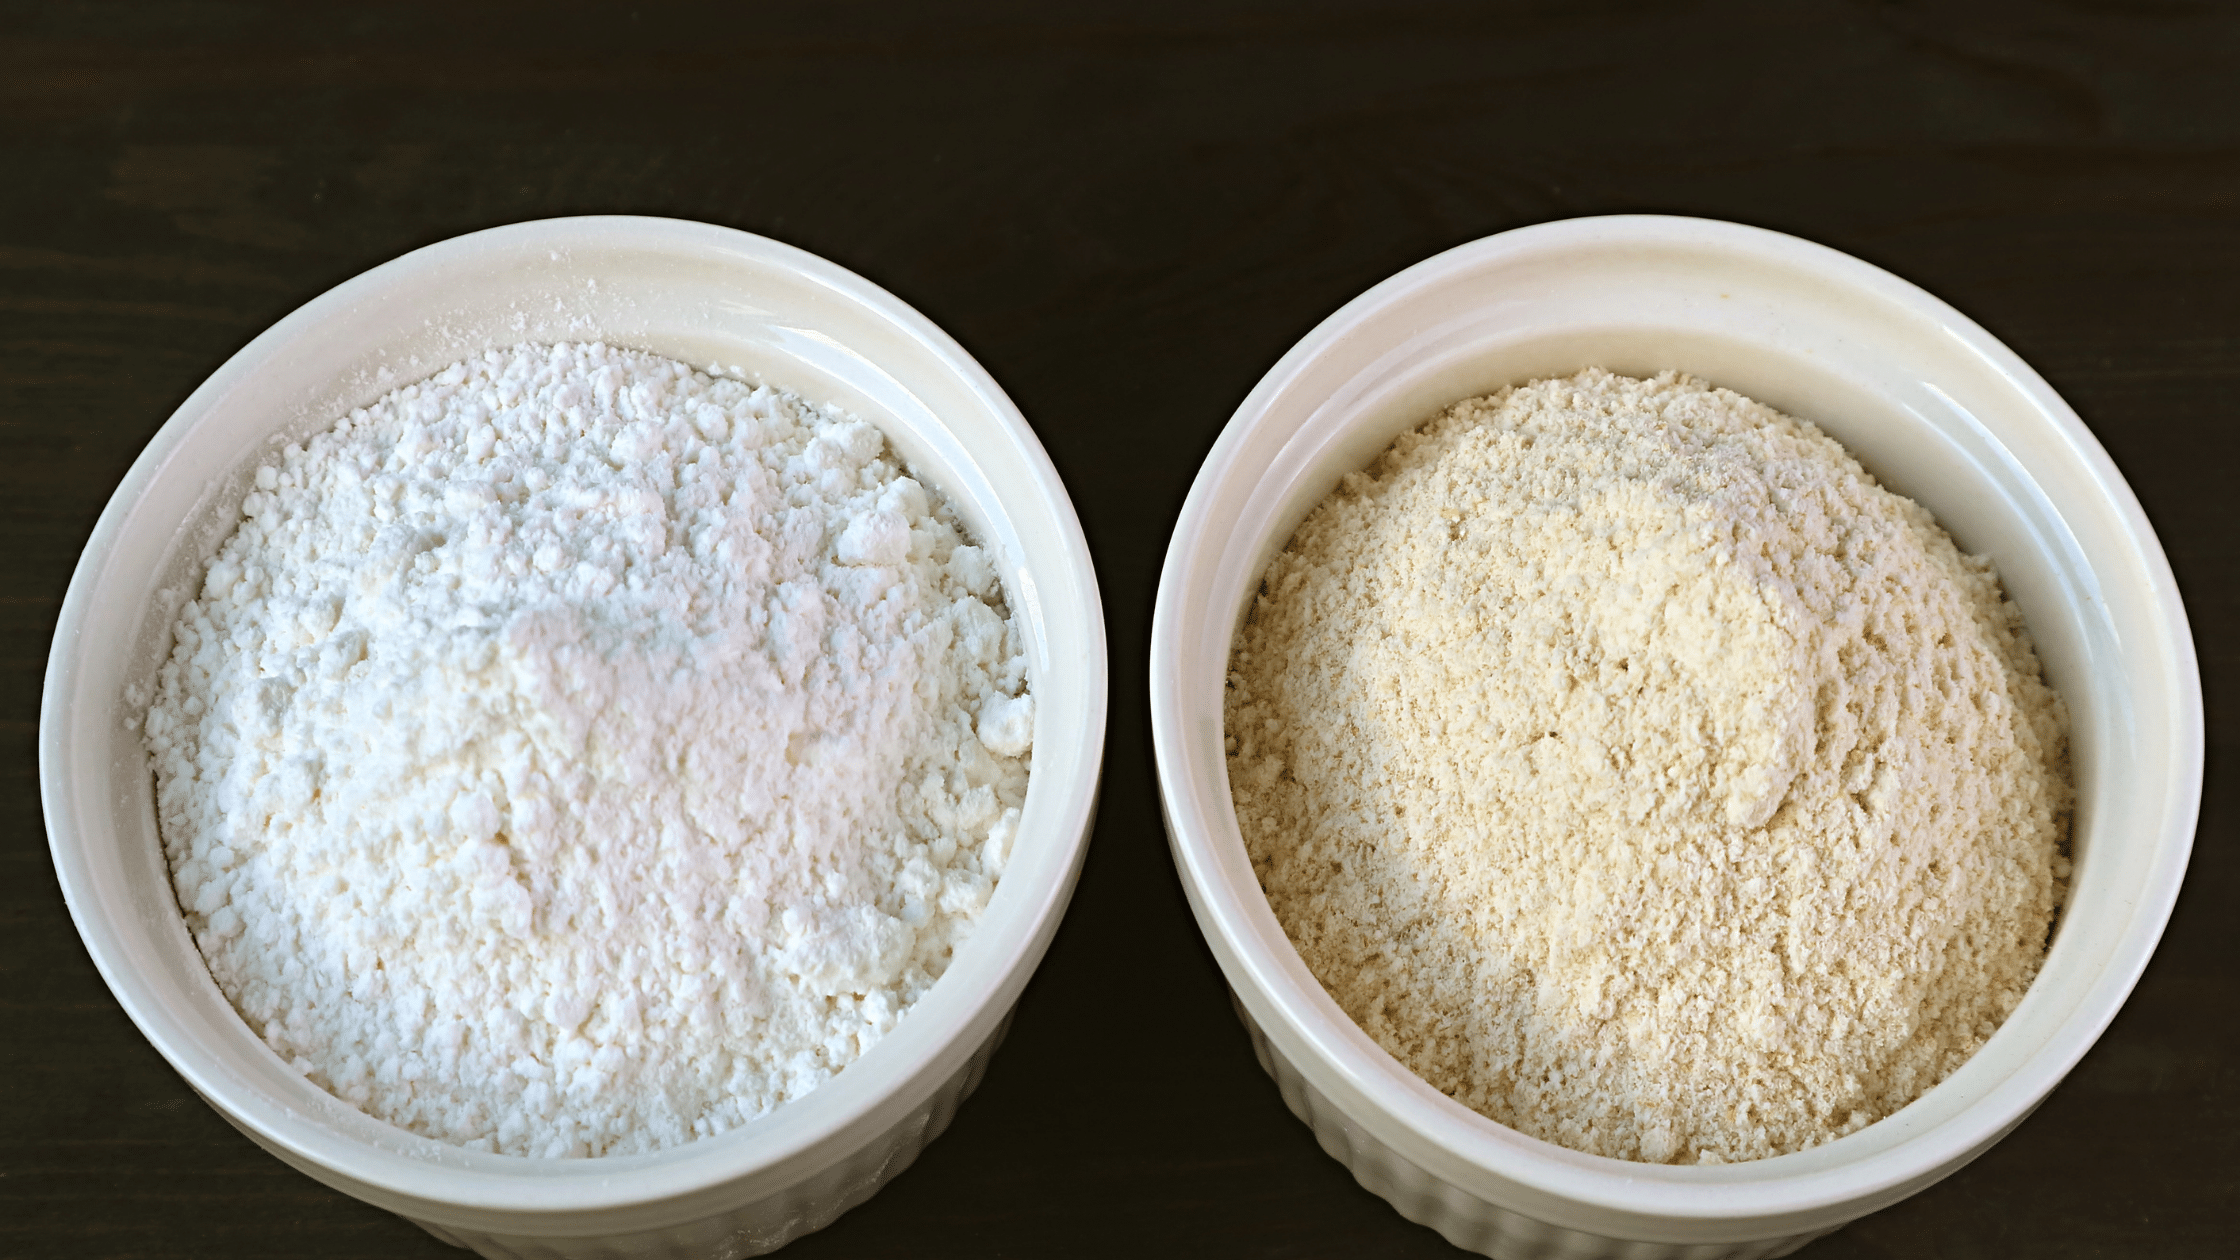 Bleached Flour or Unbleached Flour for Pizza